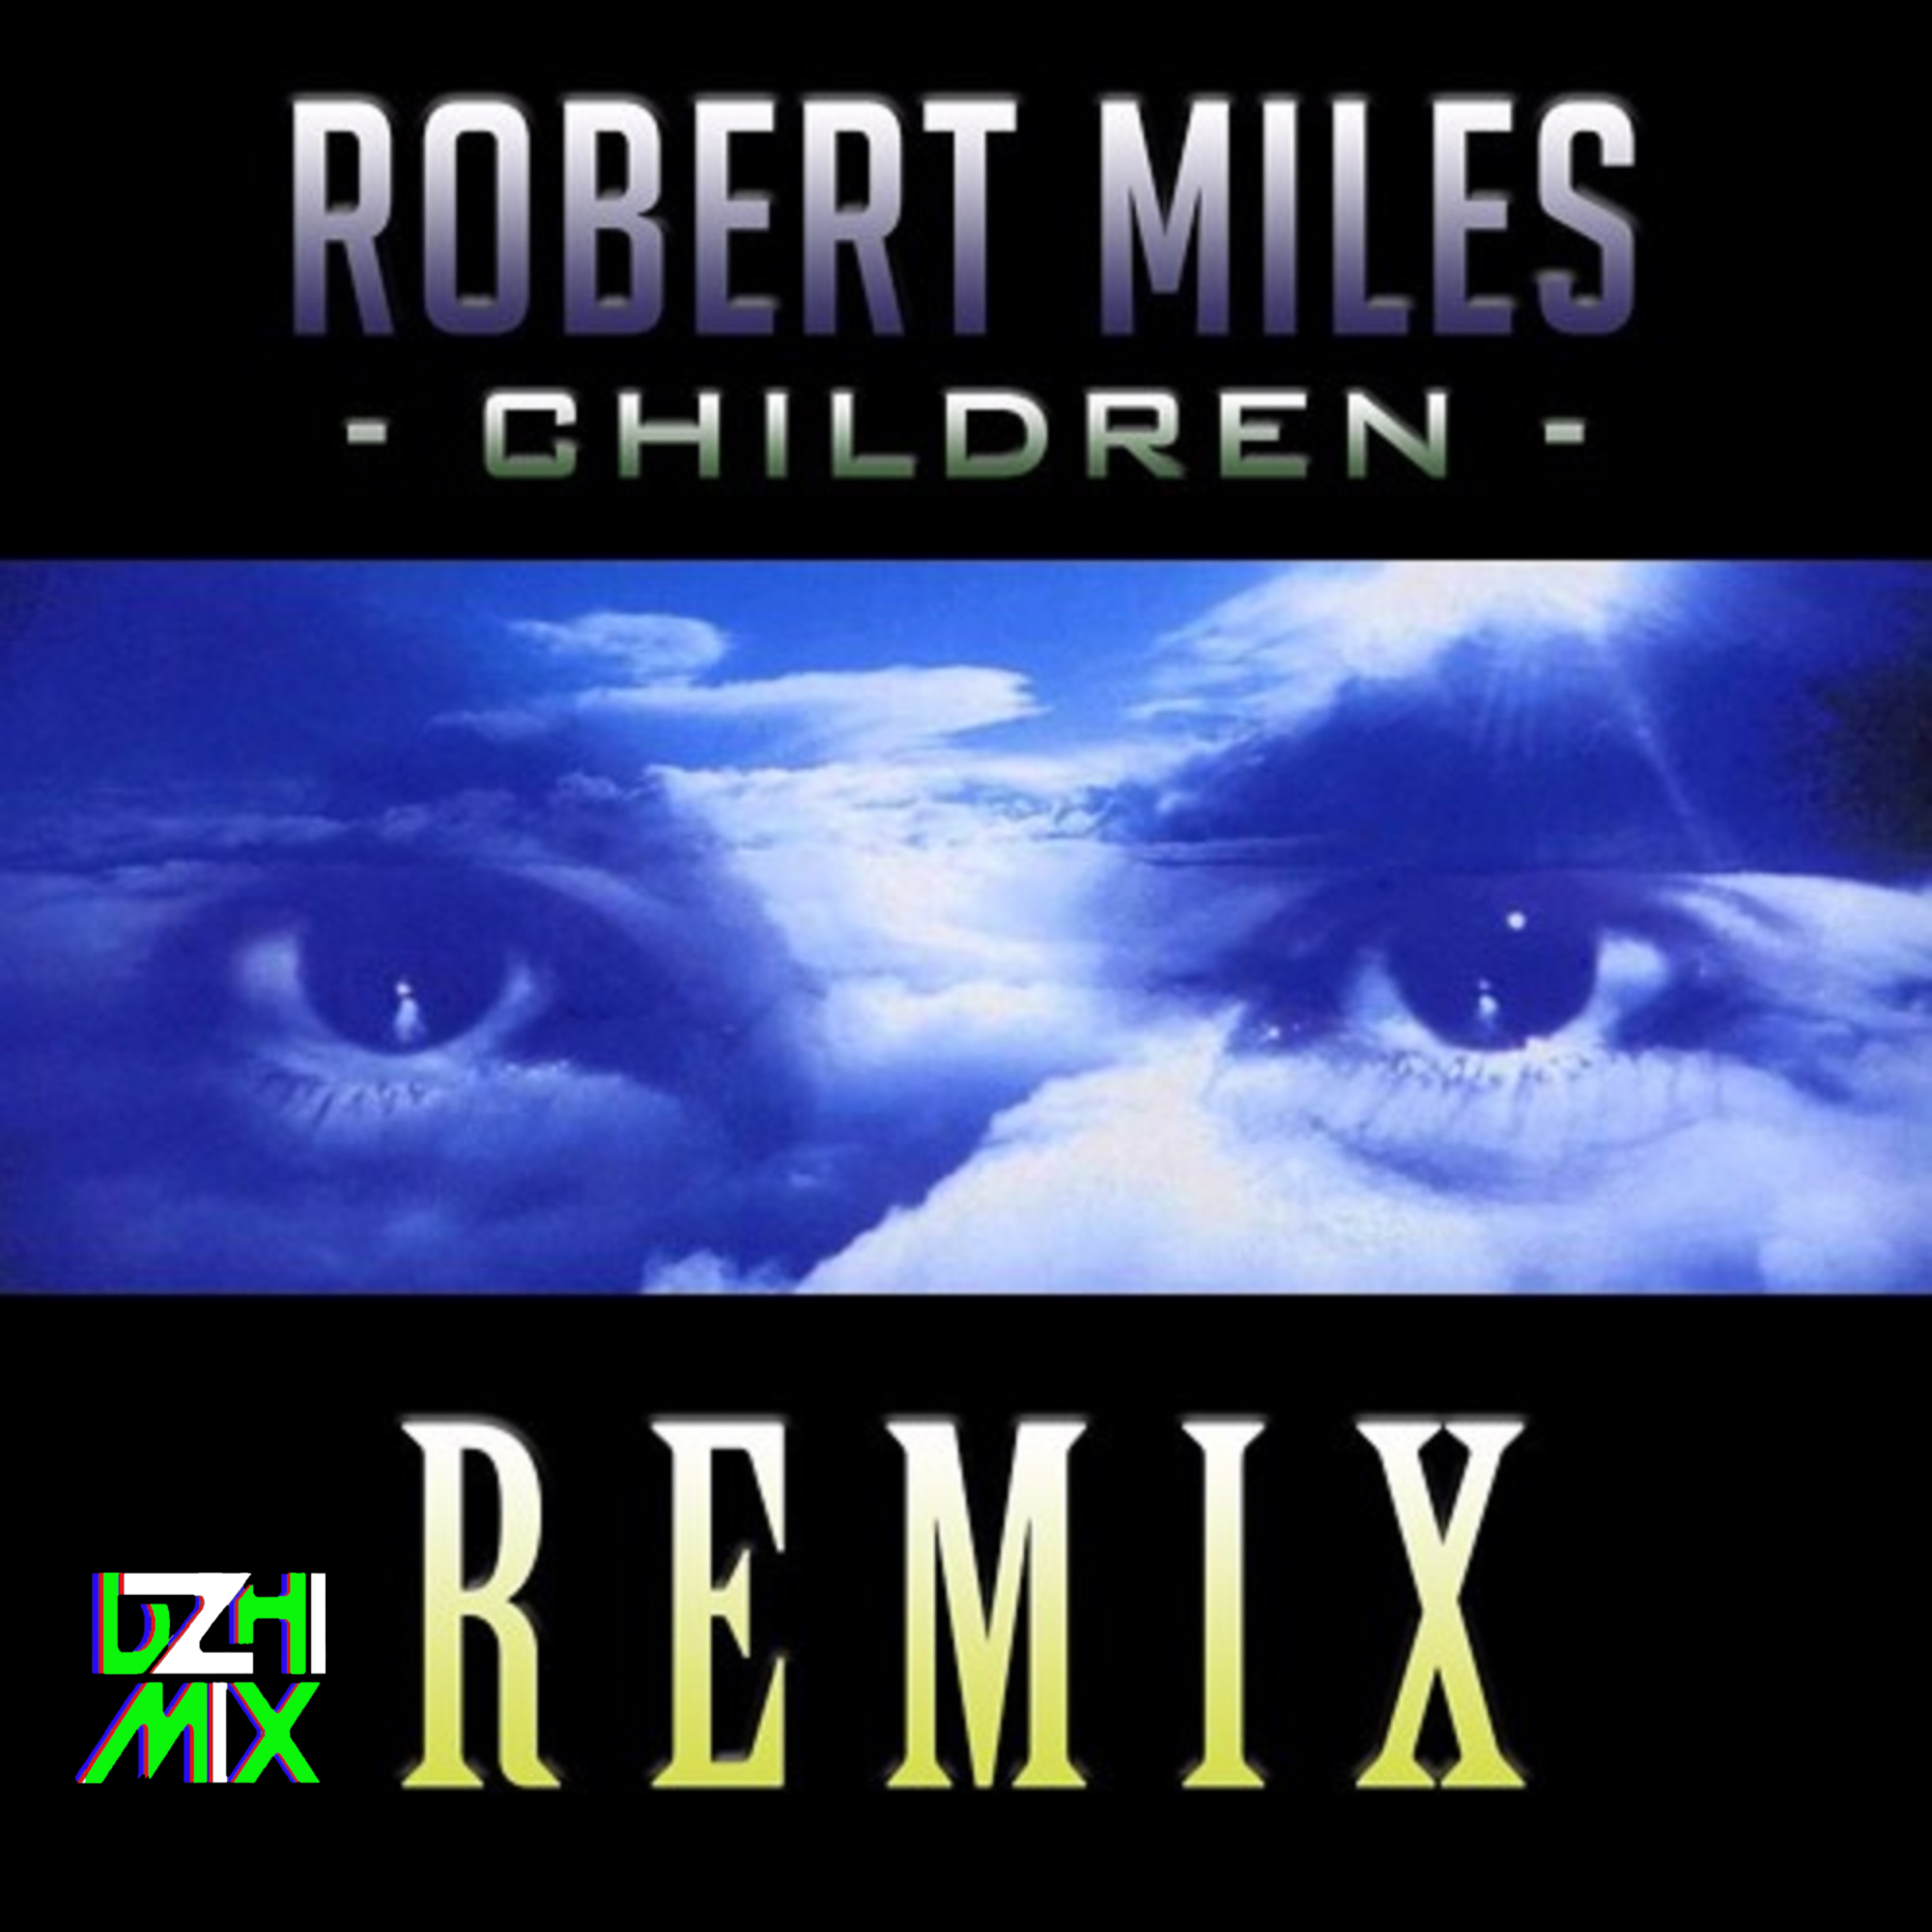 Robert miles children remix. Robert Miles. Children Robert Miles Remix. Robert Miles children обложка.